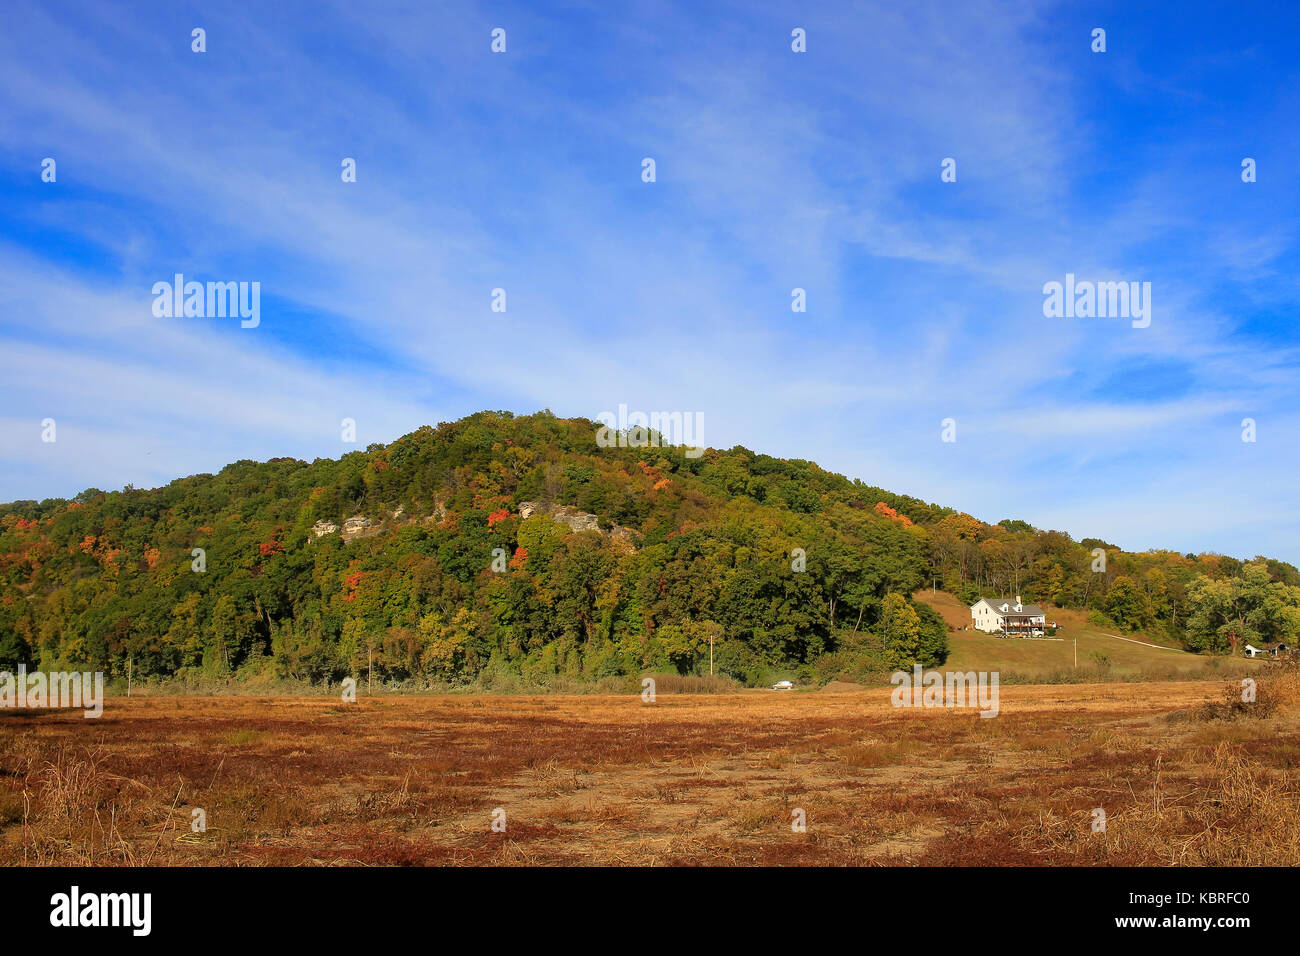 Colline boisée à l'automne ; l'herbe sèche en premier plan ; ciel bleu avec des nuages au-dessus de la colline, Missouri, Midwest Banque D'Images